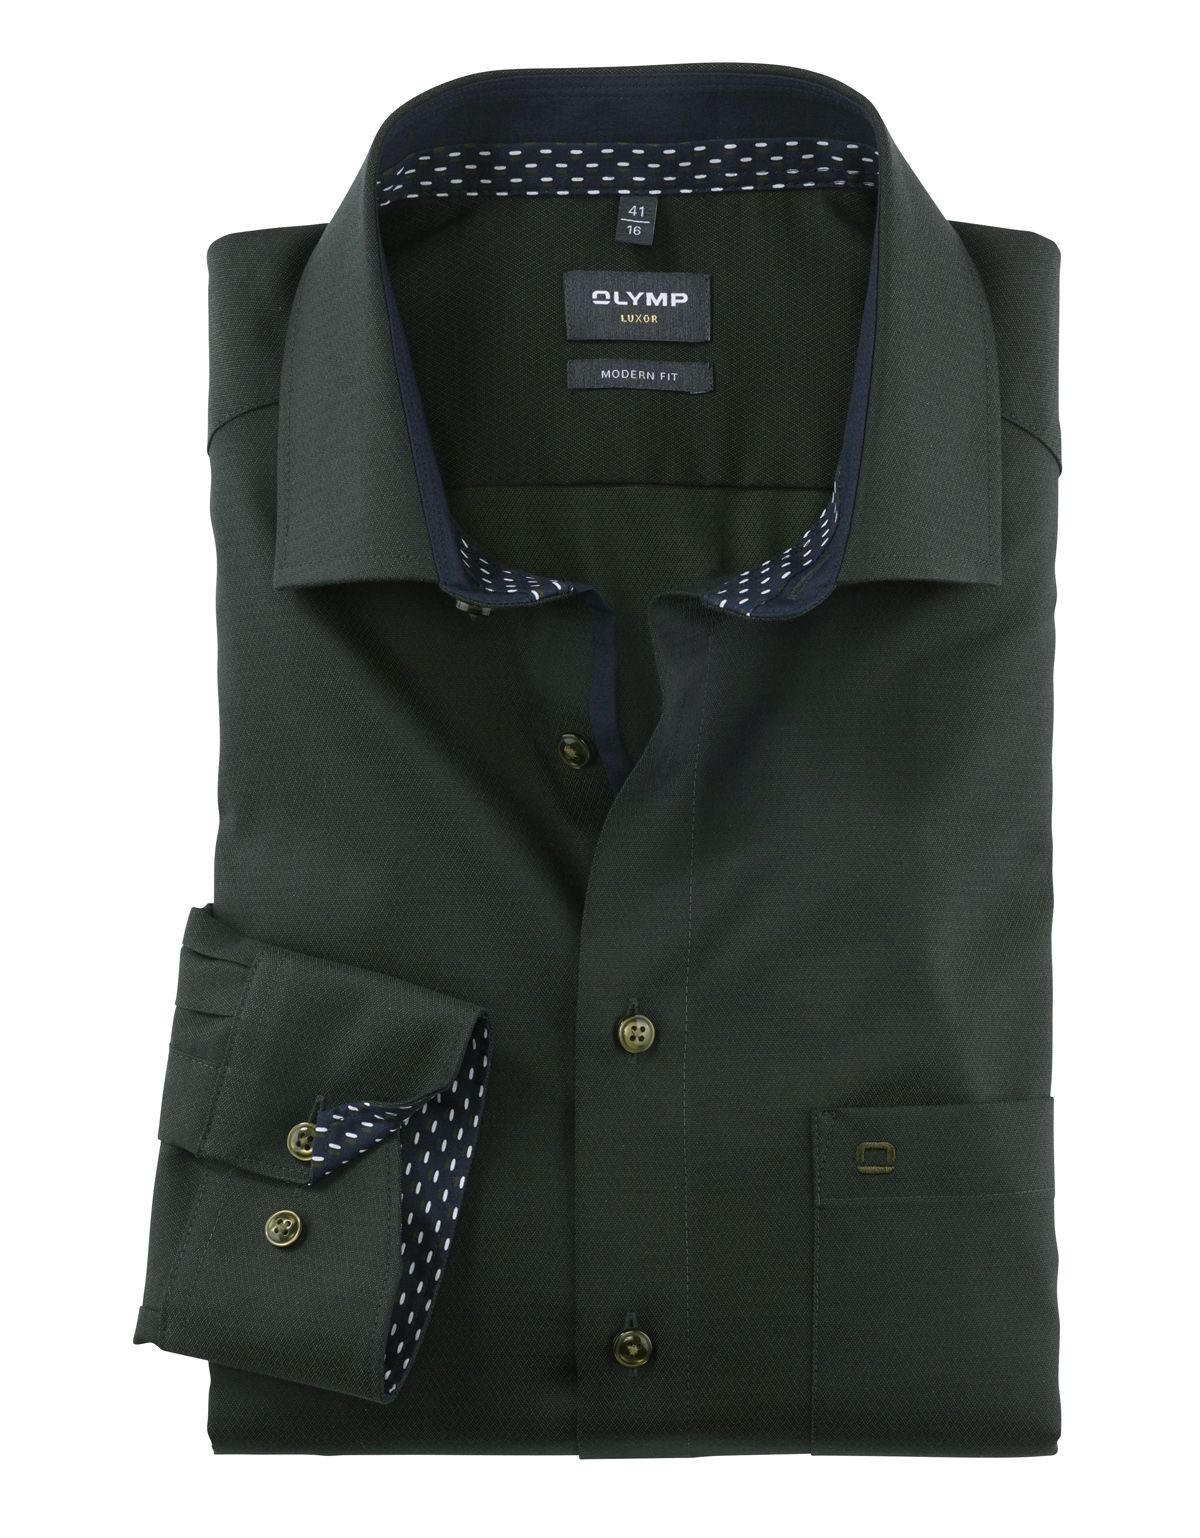 Рубашка мужская OLYMP Luxor, modern fit, фактурная ткань, рост выше 186[Зеленый]